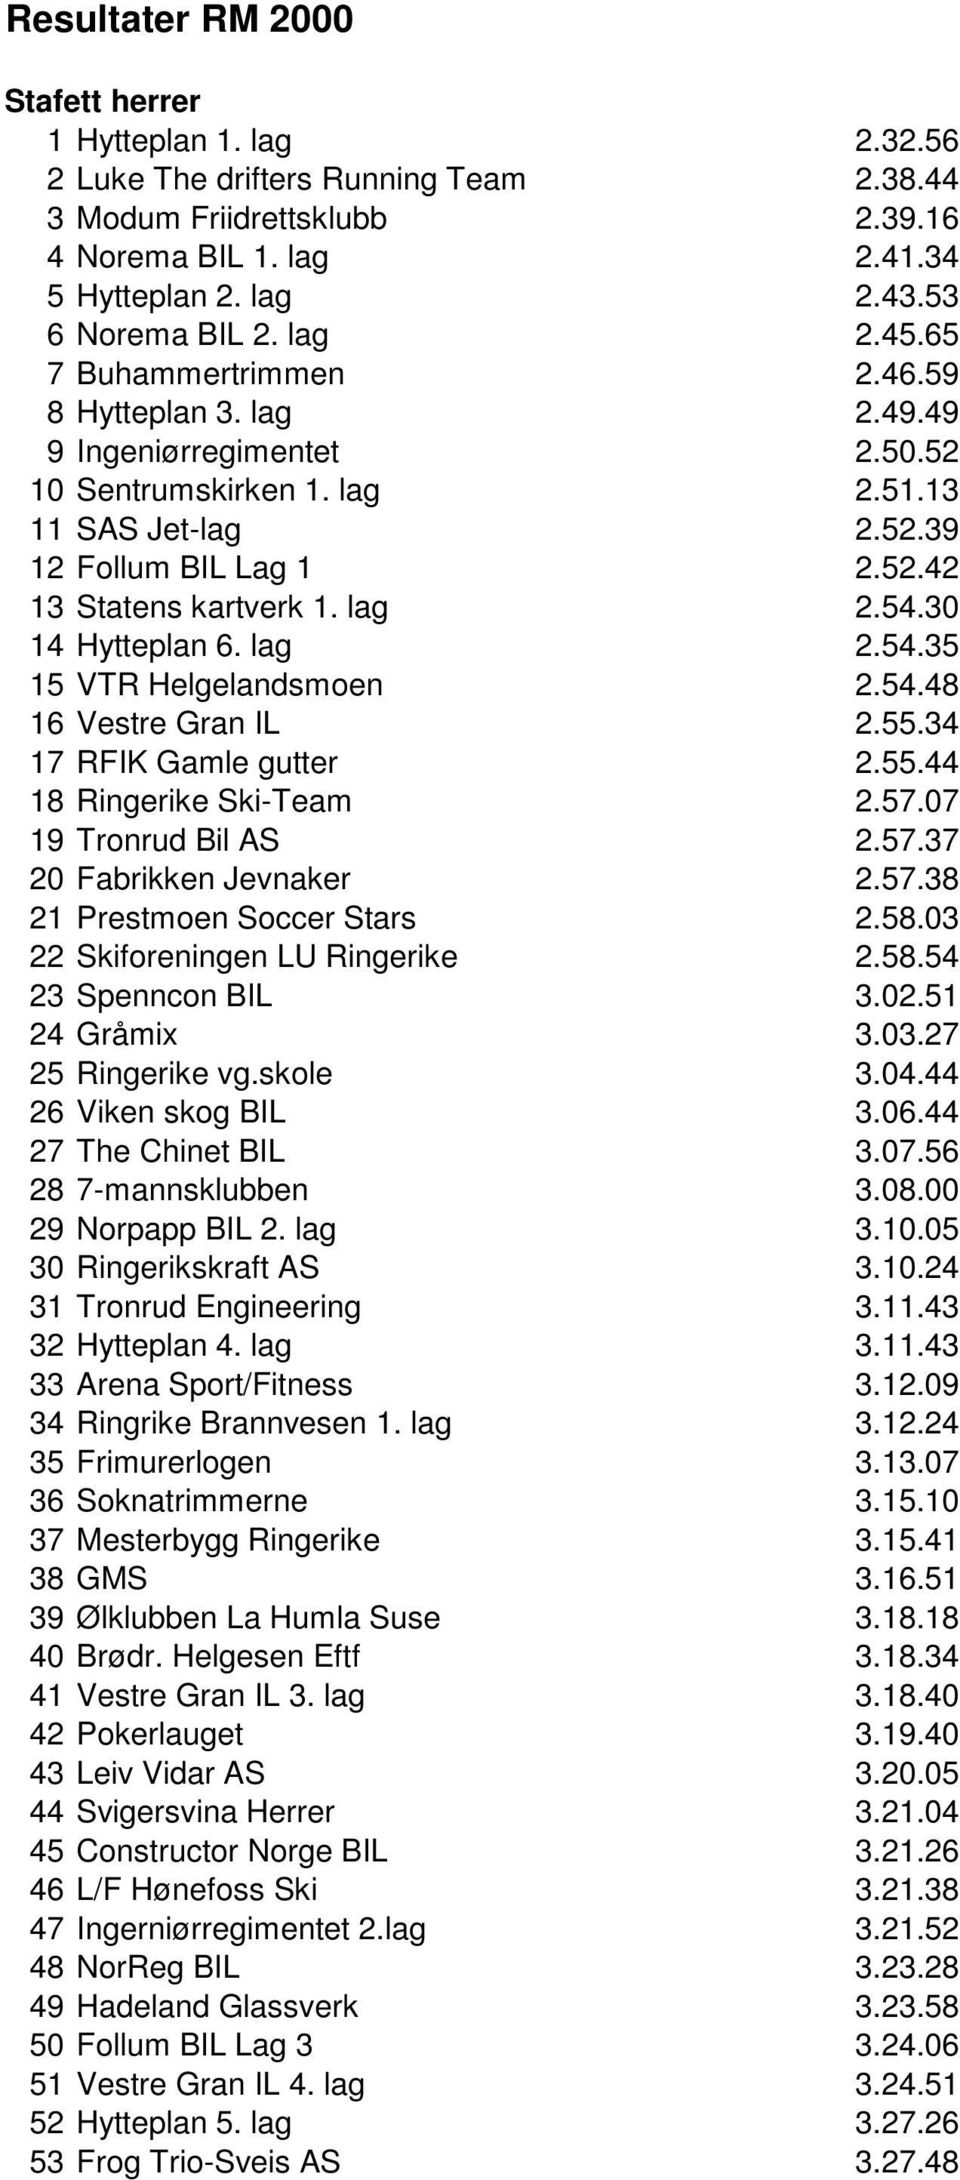 lag 2.54.30 14 Hytteplan 6. lag 2.54.35 15 VTR Helgelandsmoen 2.54.48 16 Vestre Gran IL 2.55.34 17 RFIK Gamle gutter 2.55.44 18 Ringerike Ski-Team 2.57.07 19 Tronrud Bil AS 2.57.37 20 Fabrikken Jevnaker 2.